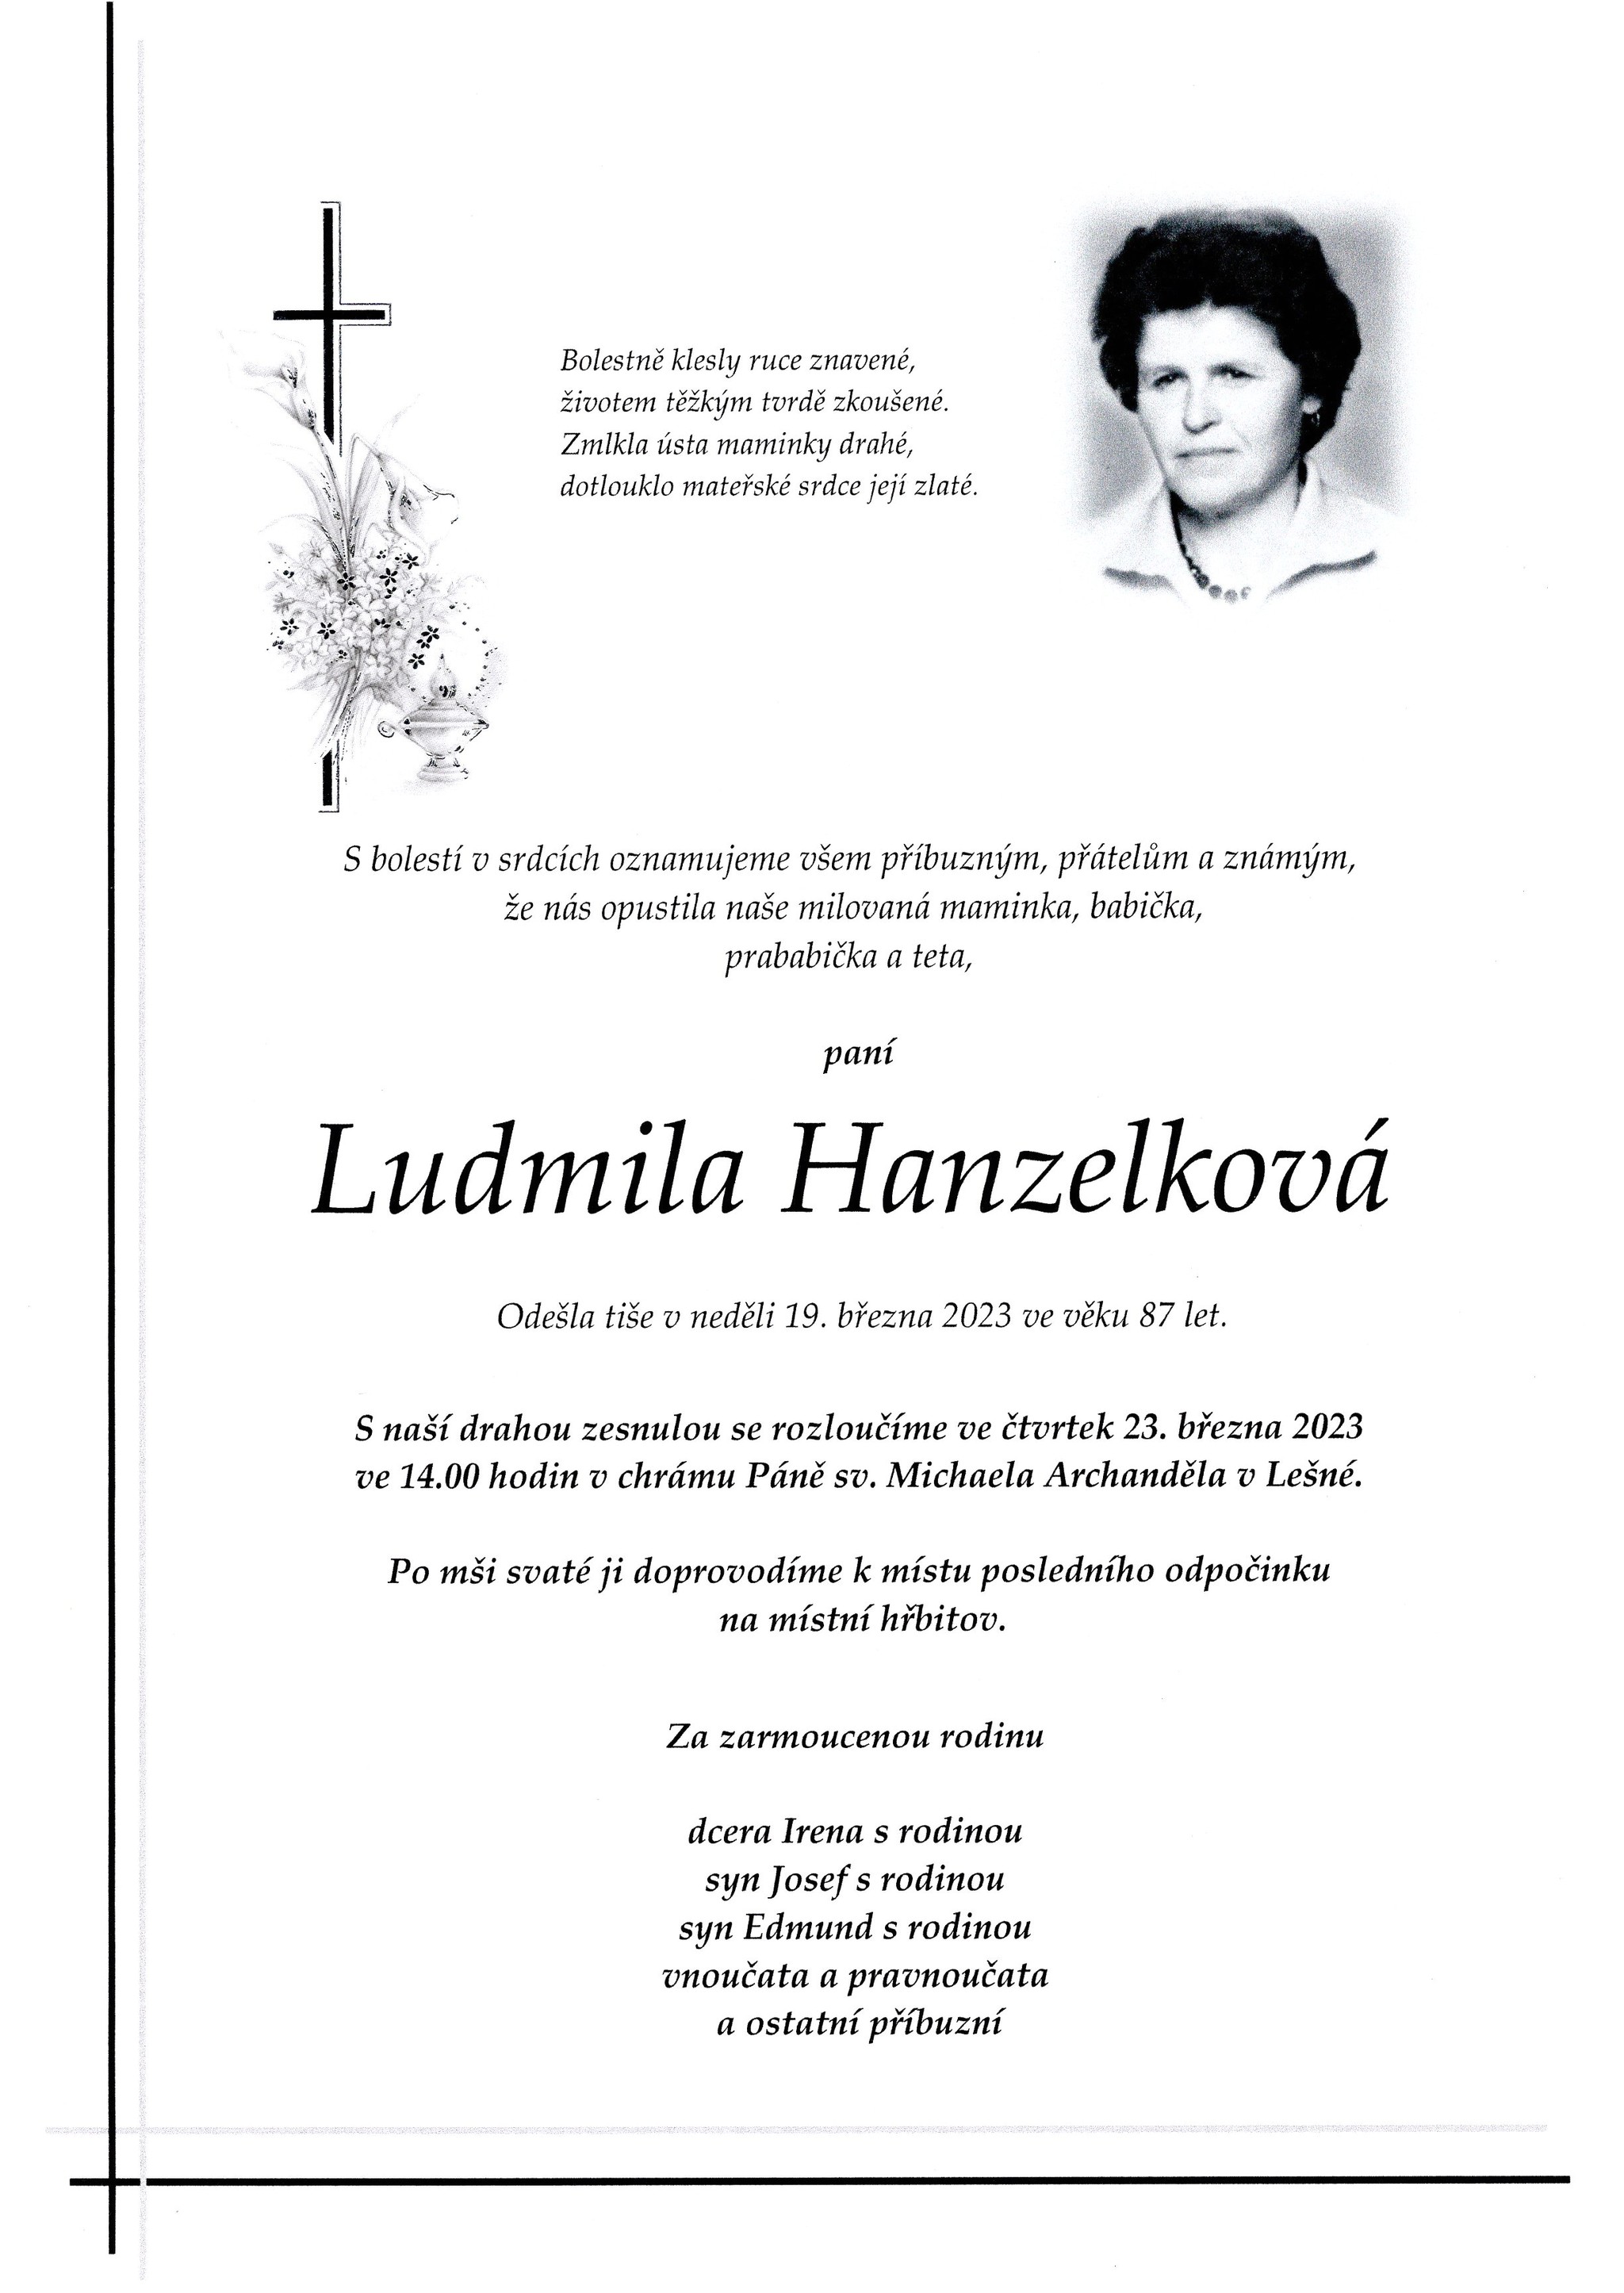 Ludmila Hanzelková